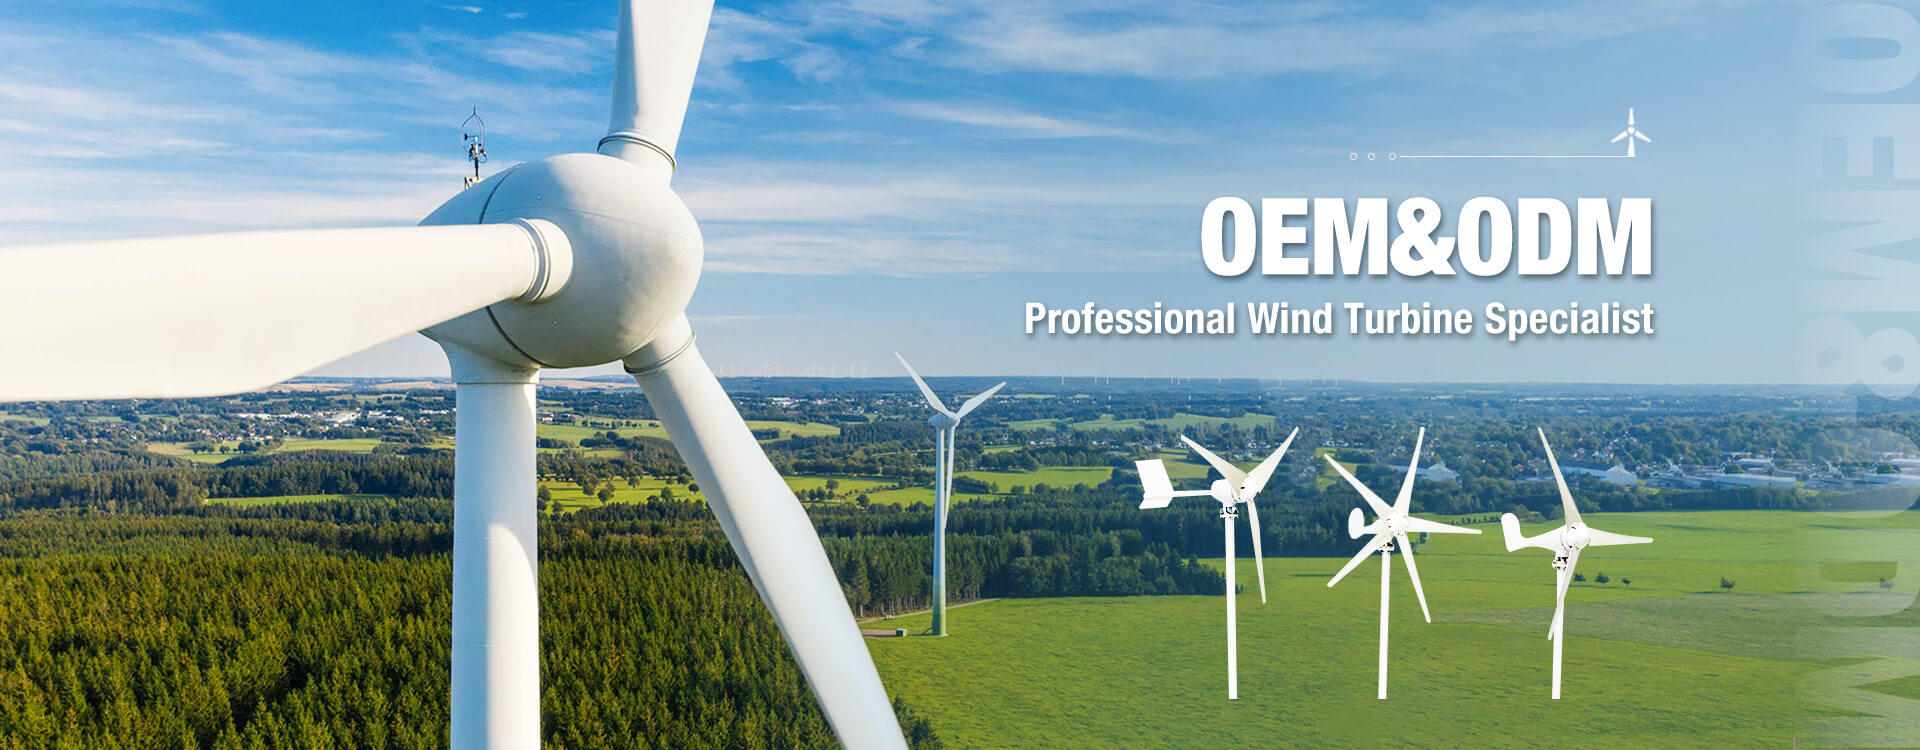 Professional Wind Turbine Specialist